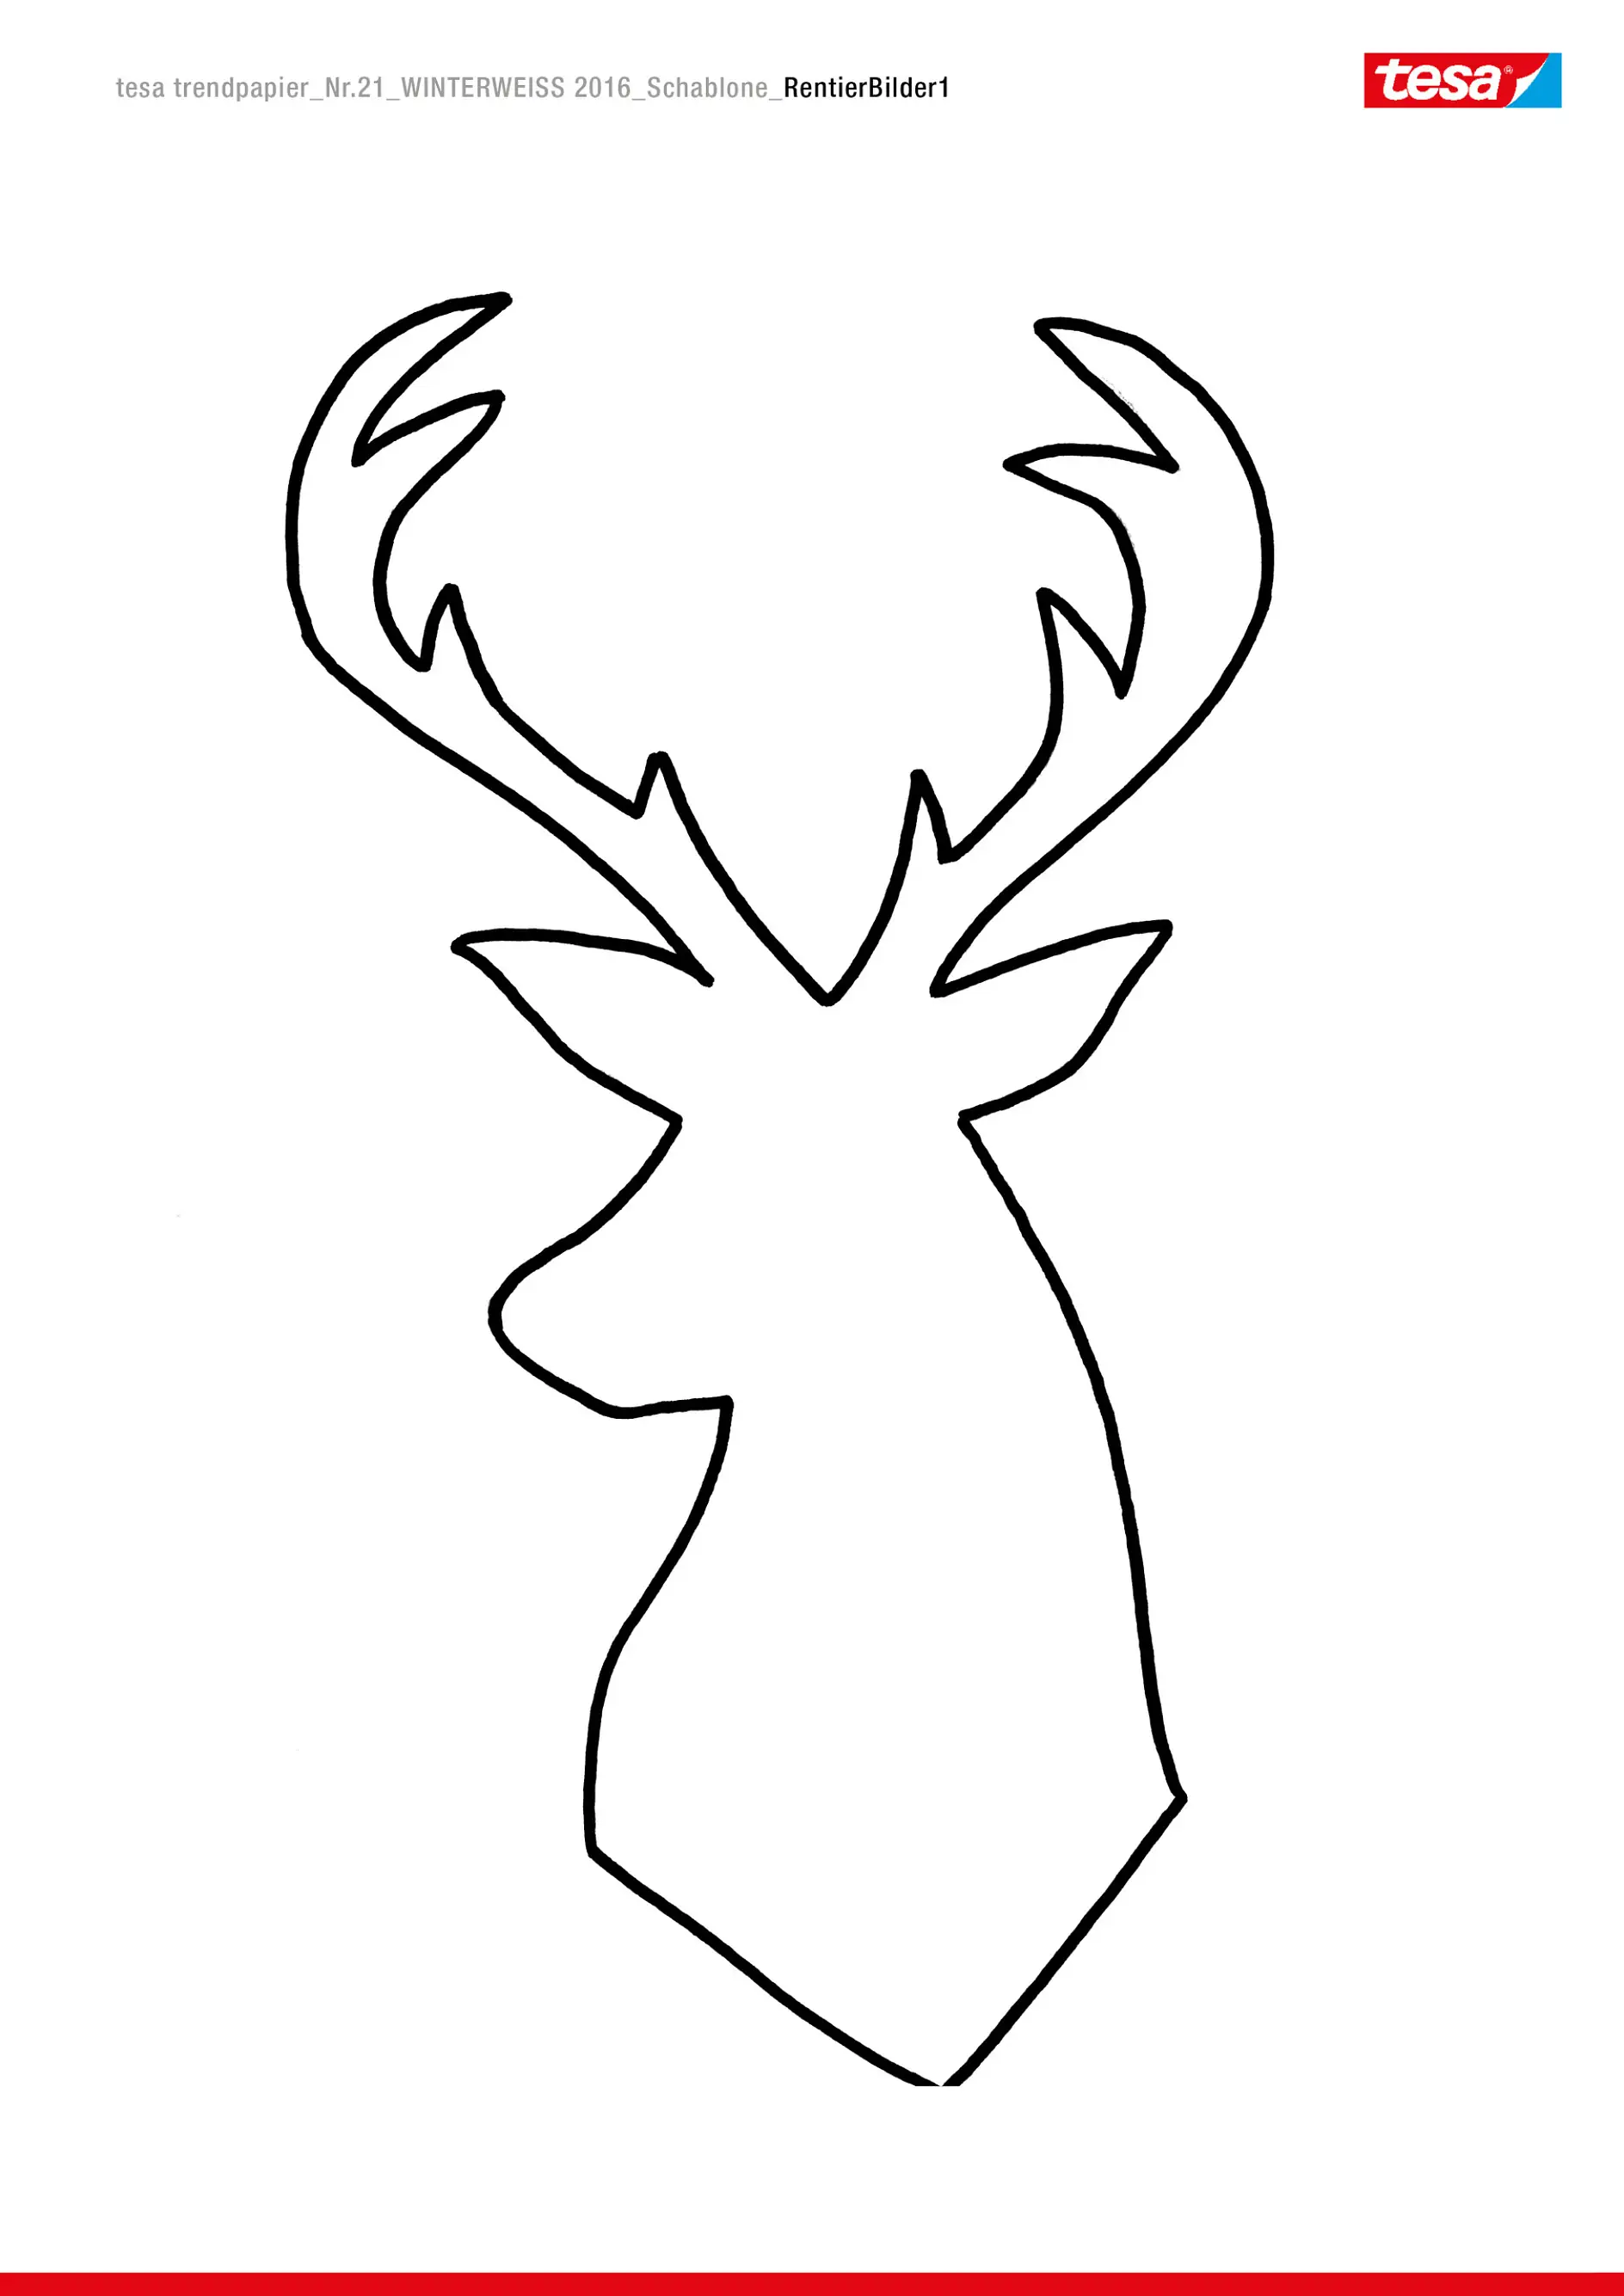 Reindeer Head Template